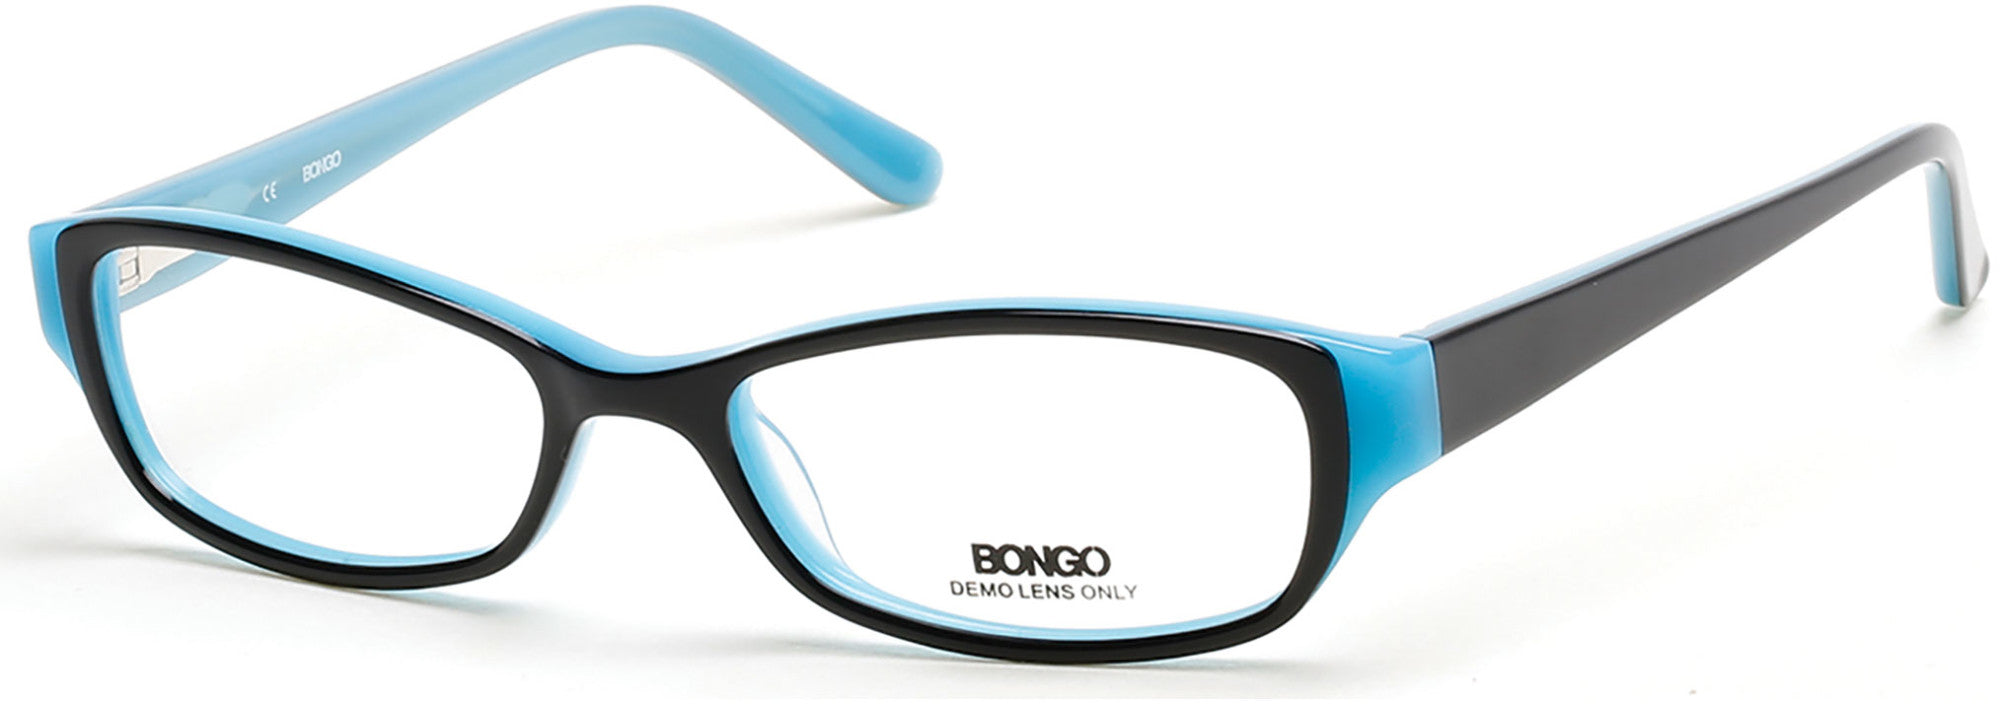 Bongo Eyeglasses BG0159 001-001 - Shiny Black